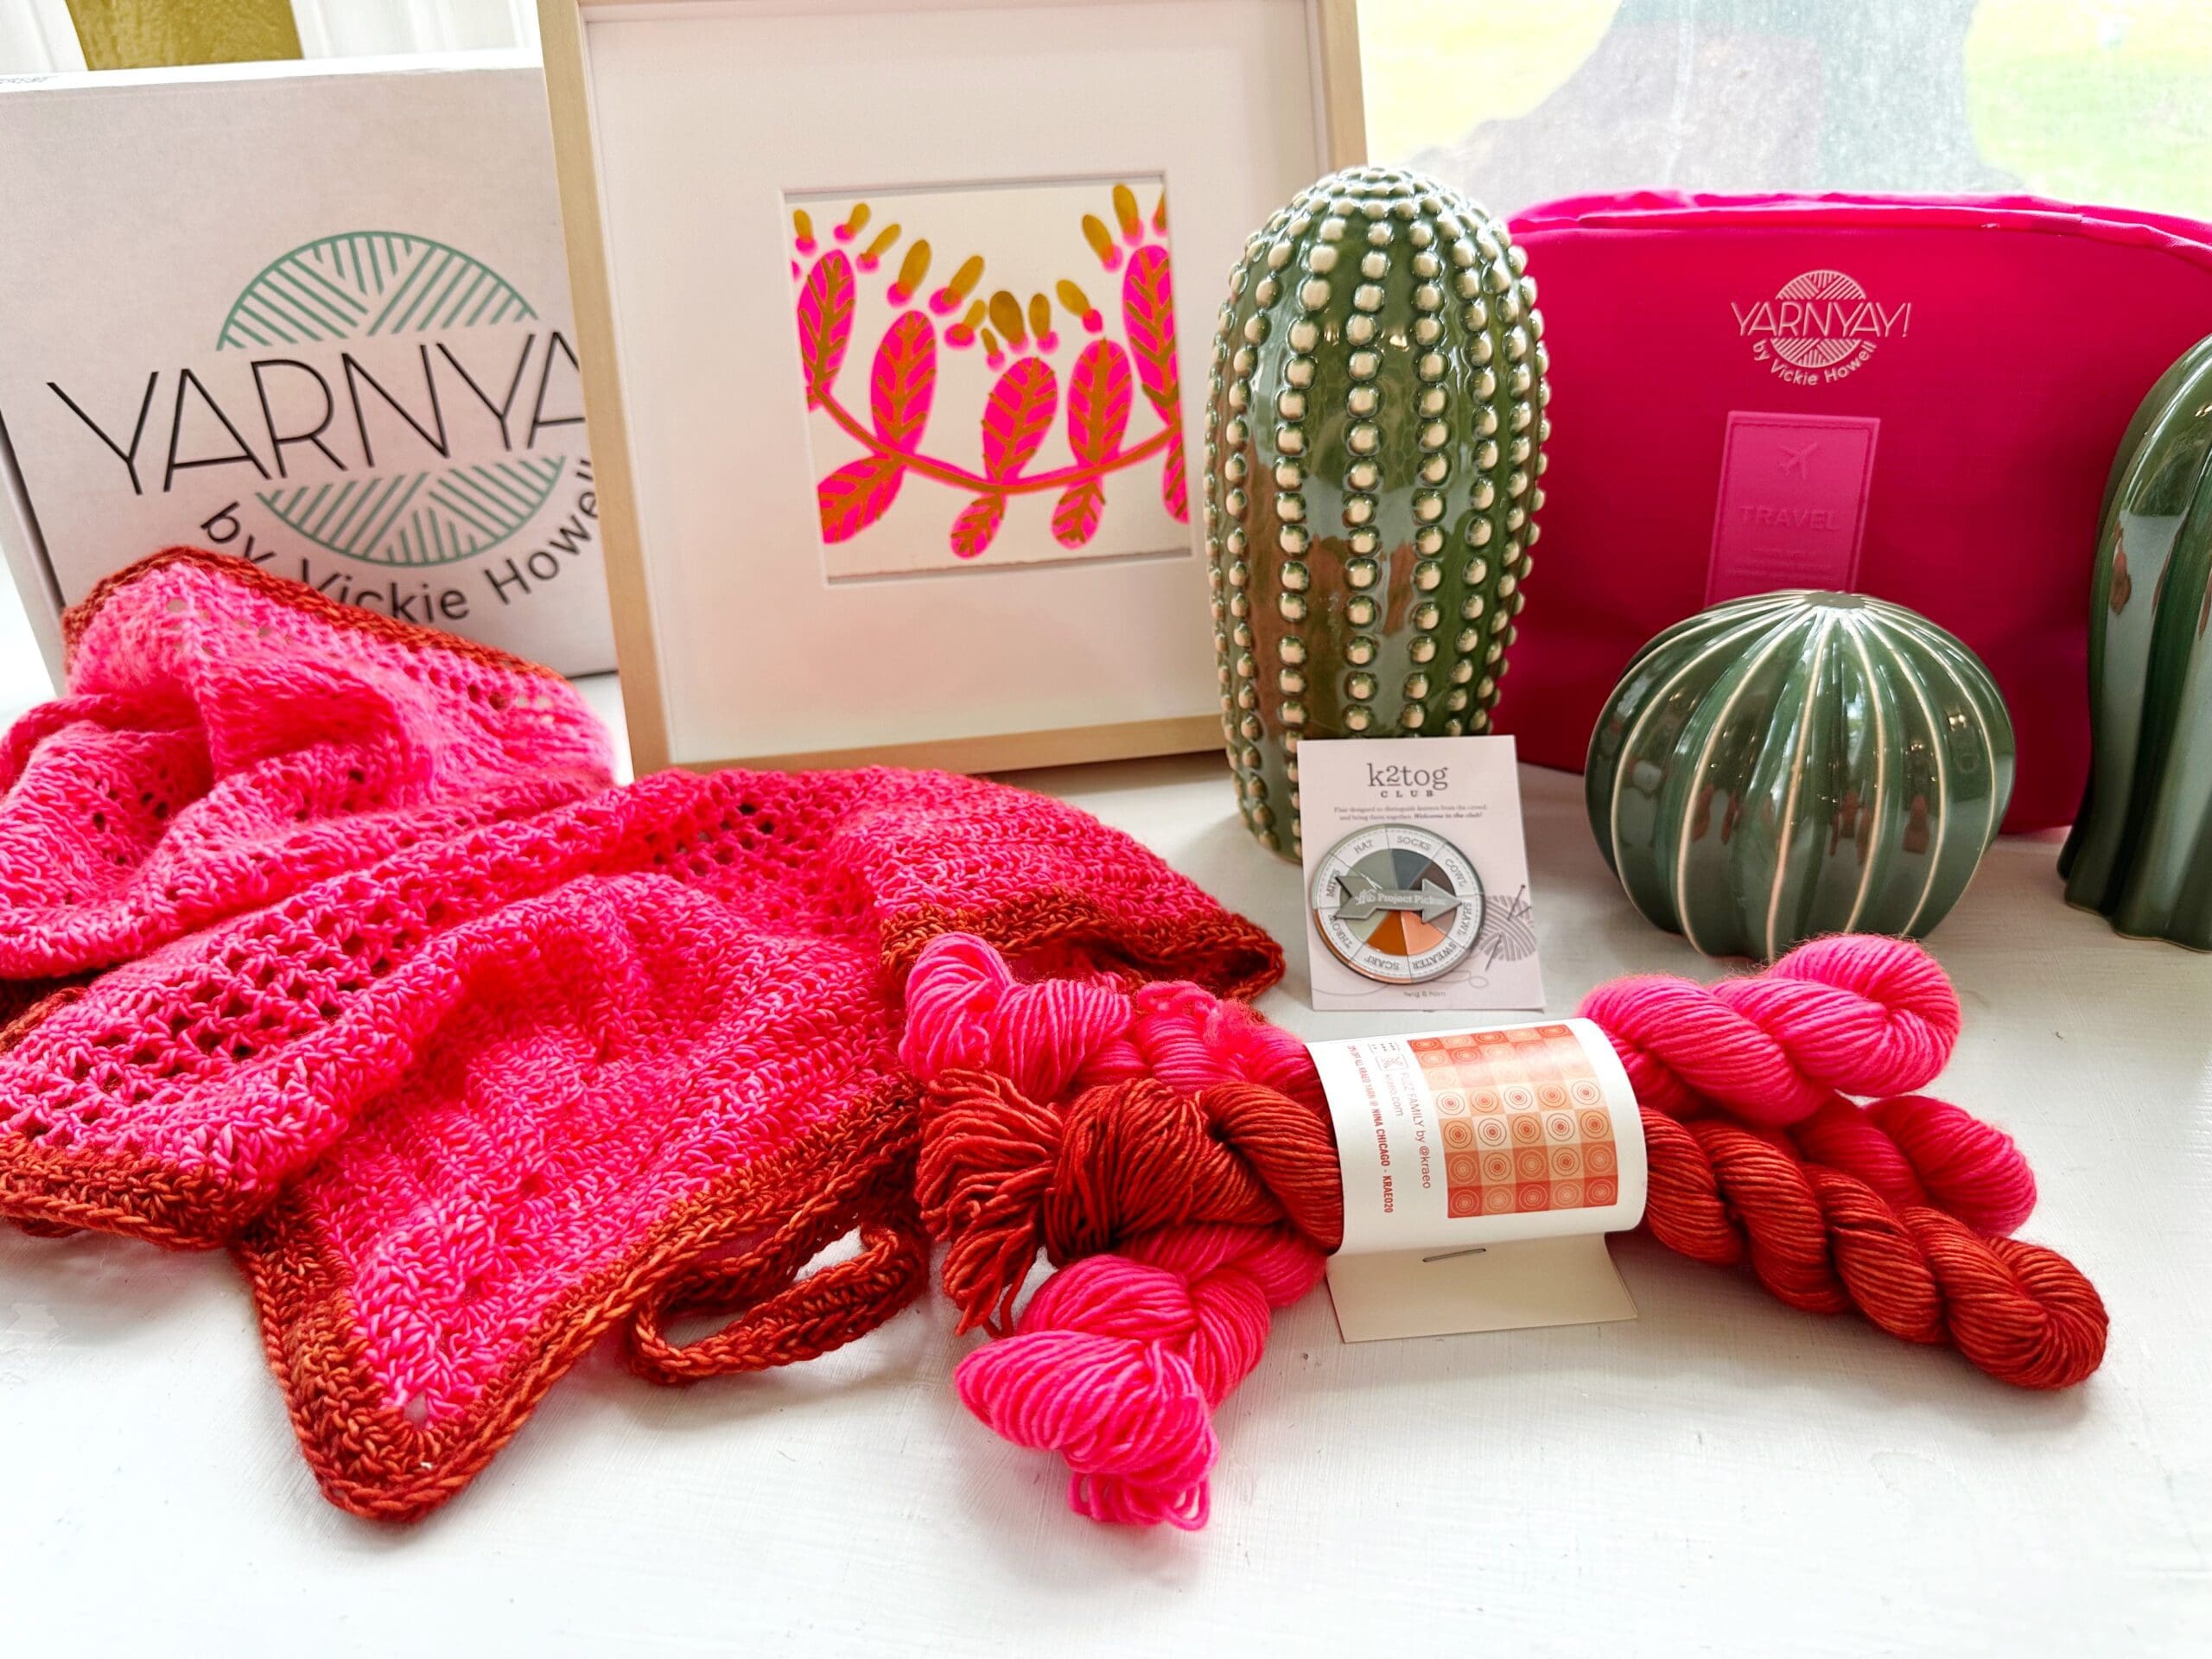 YarnYAY! April Box #60 | Knitting and Crochet Subscription Box